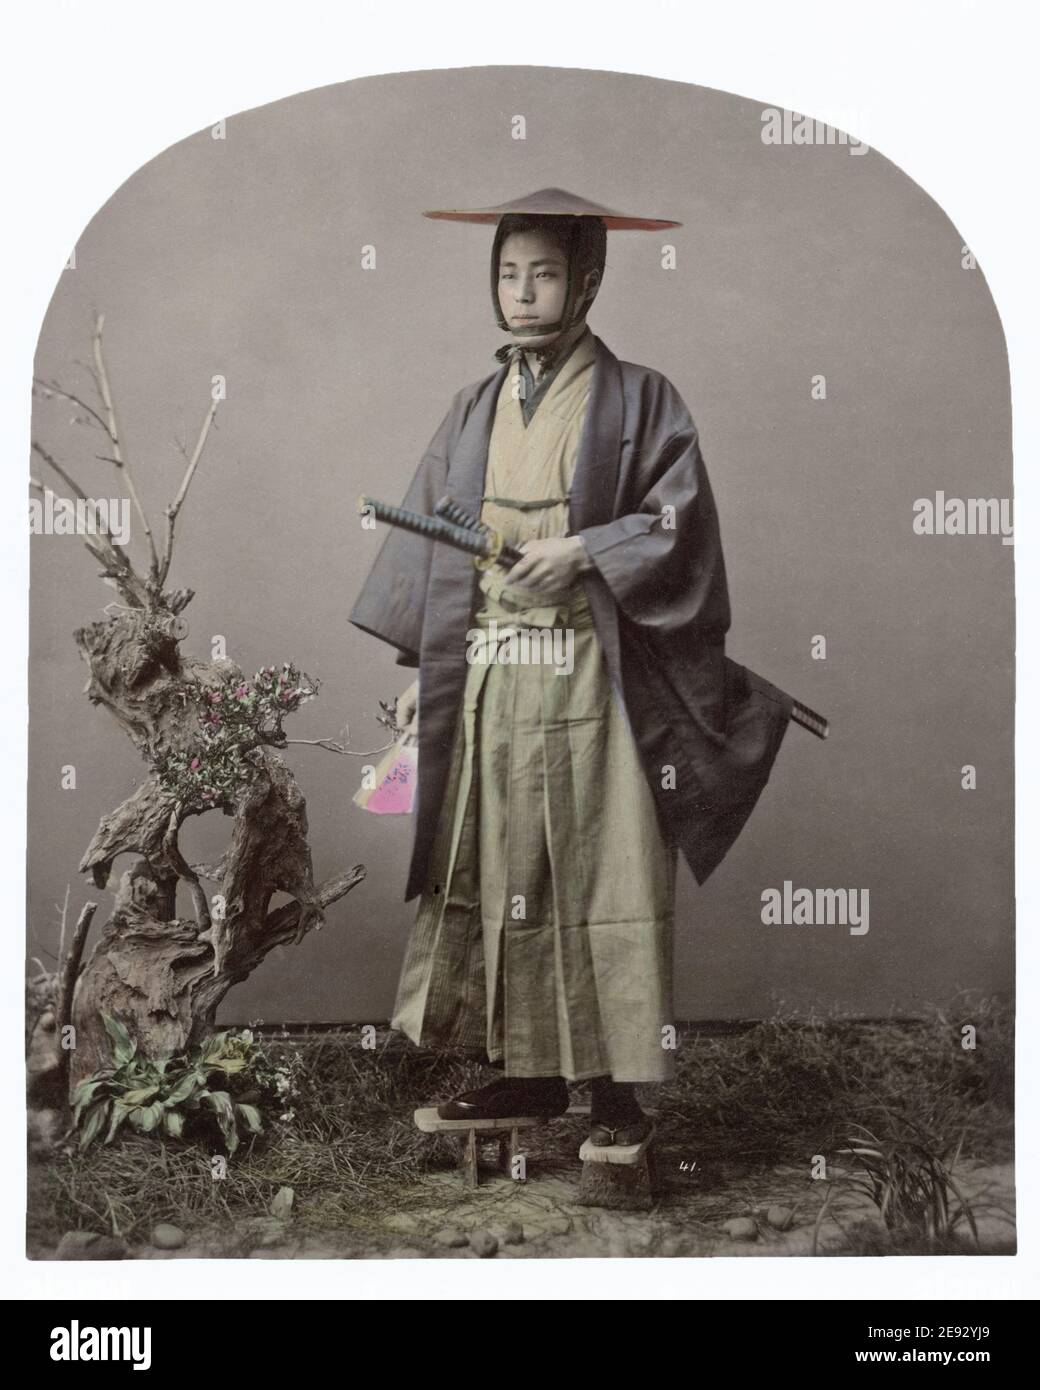 Photographie de la fin du XIXe siècle - Samurai avec deux épées, Japon Banque D'Images